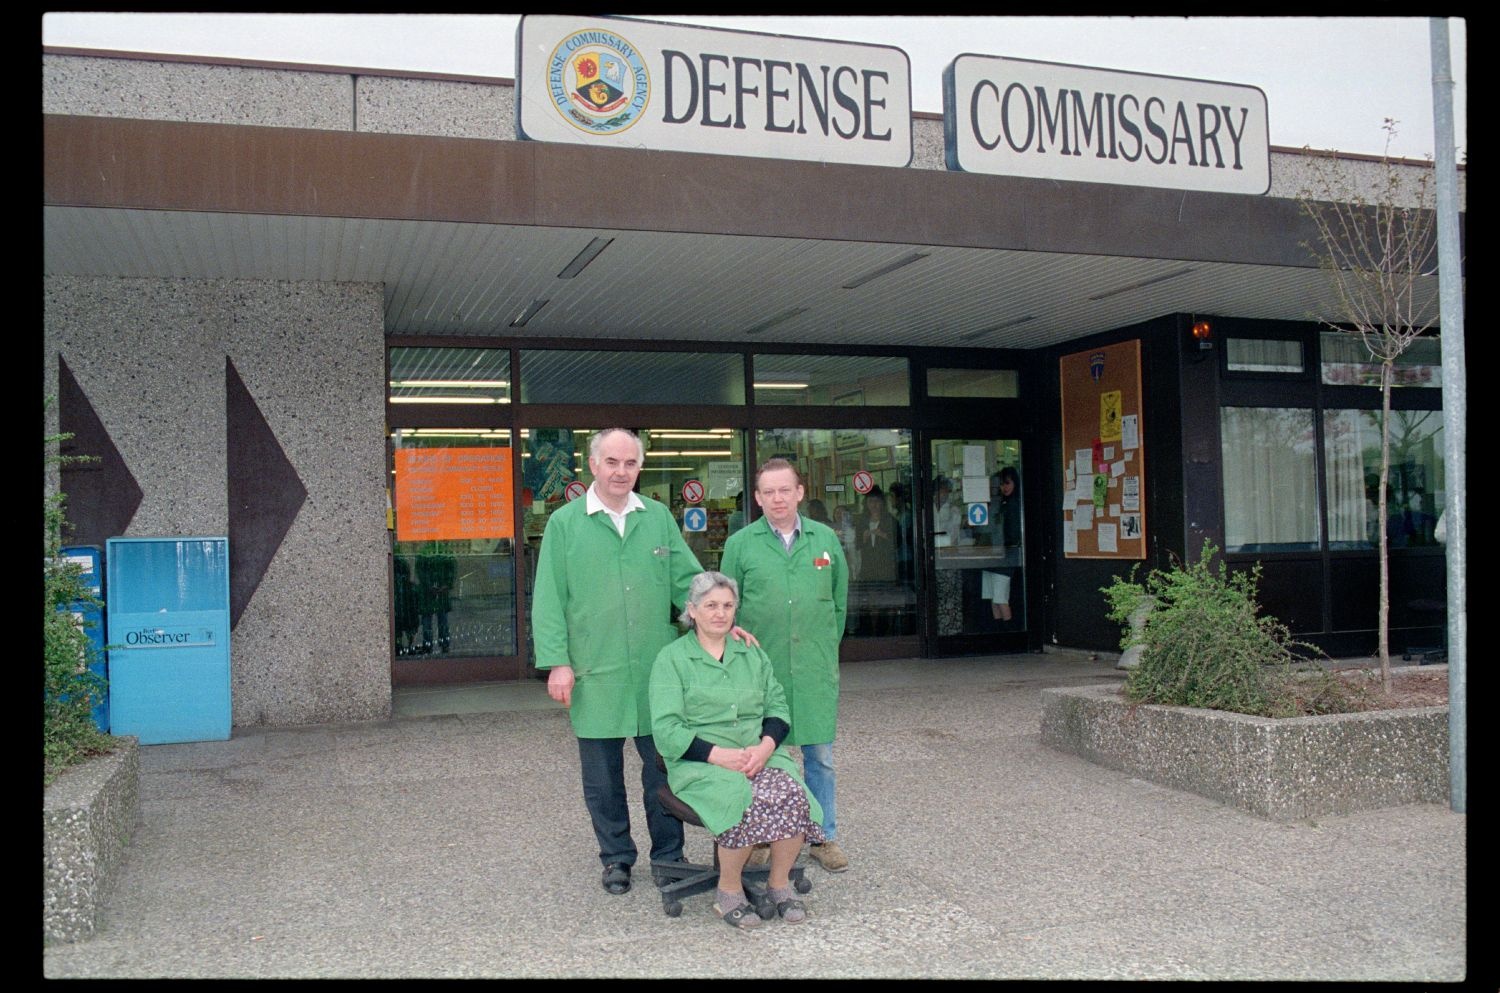 Fotografie: Angestellte des Defense Commissary im Einkaufszentrum Truman Plaza in Berlin-Dahlem (AlliiertenMuseum/U.S. Army Photograph Public Domain Mark)